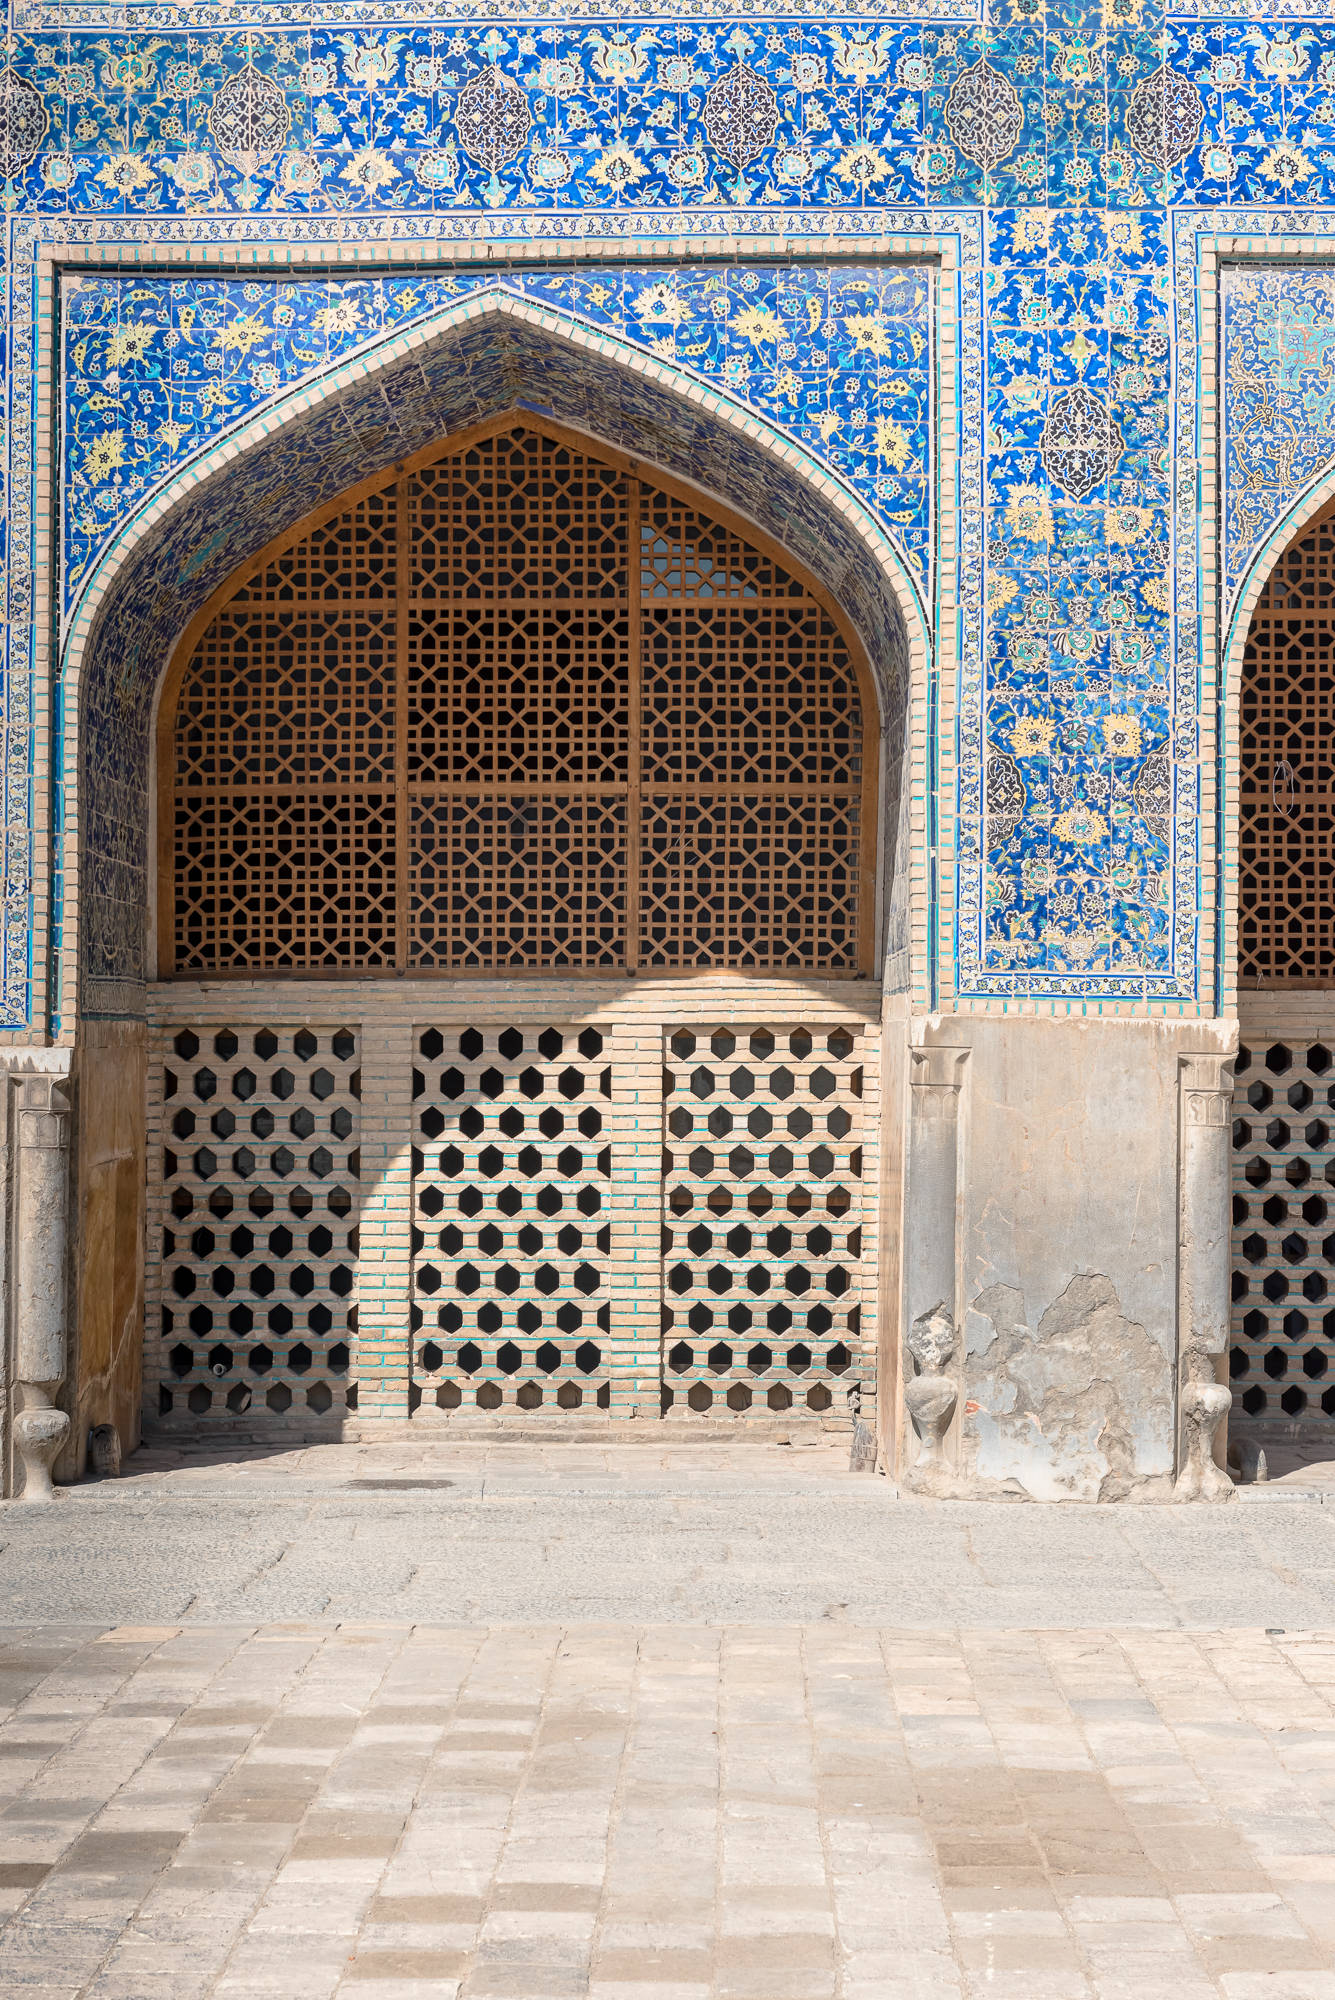 光是大门瓷砖就贴了4年，整整高达30多米，伊朗这座清真寺好神奇